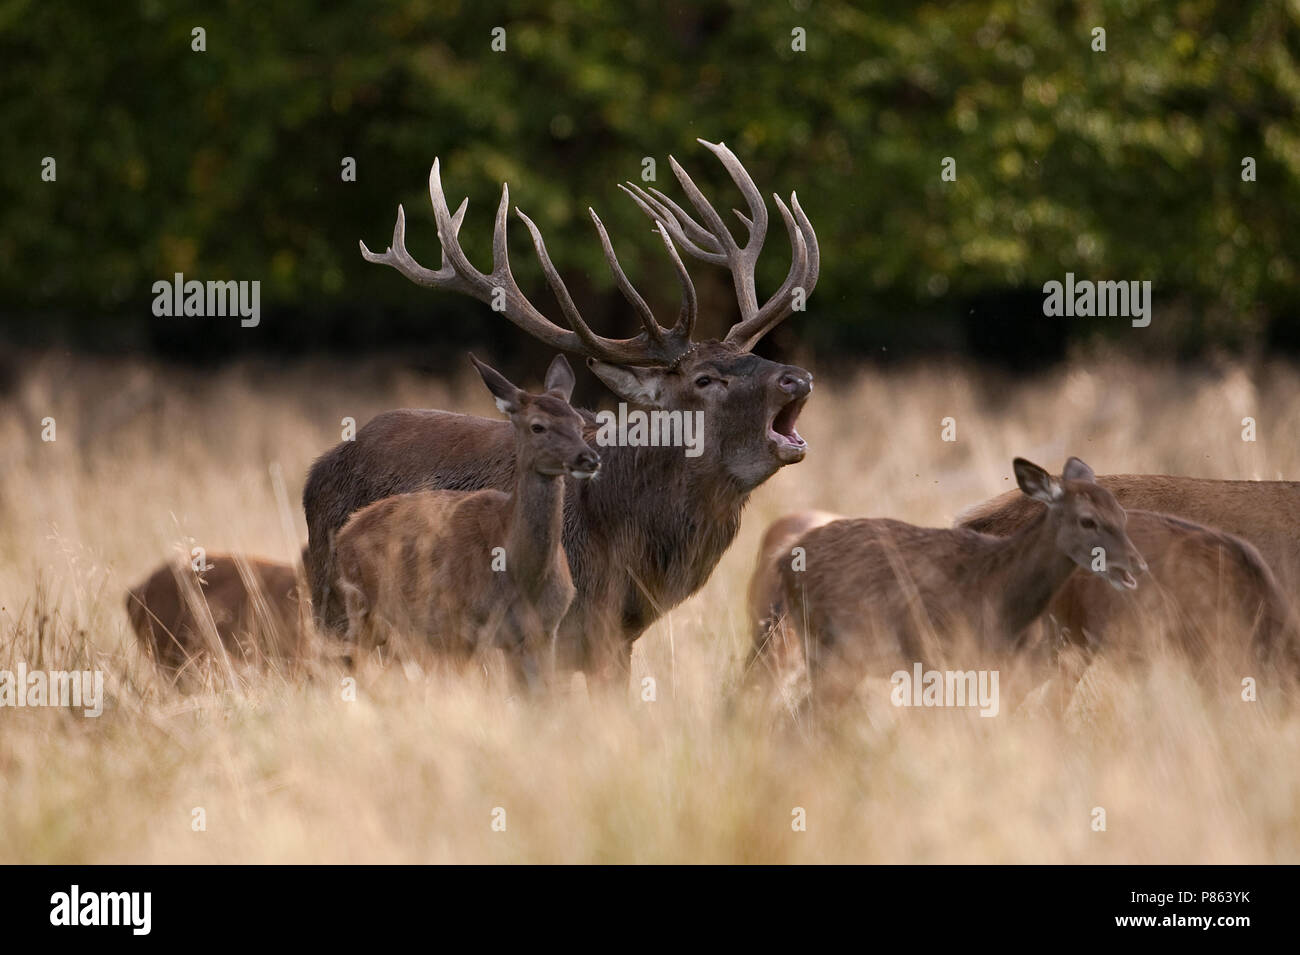 Bronstig mannetje Edelhert; Red deer male displaying Stock Photo